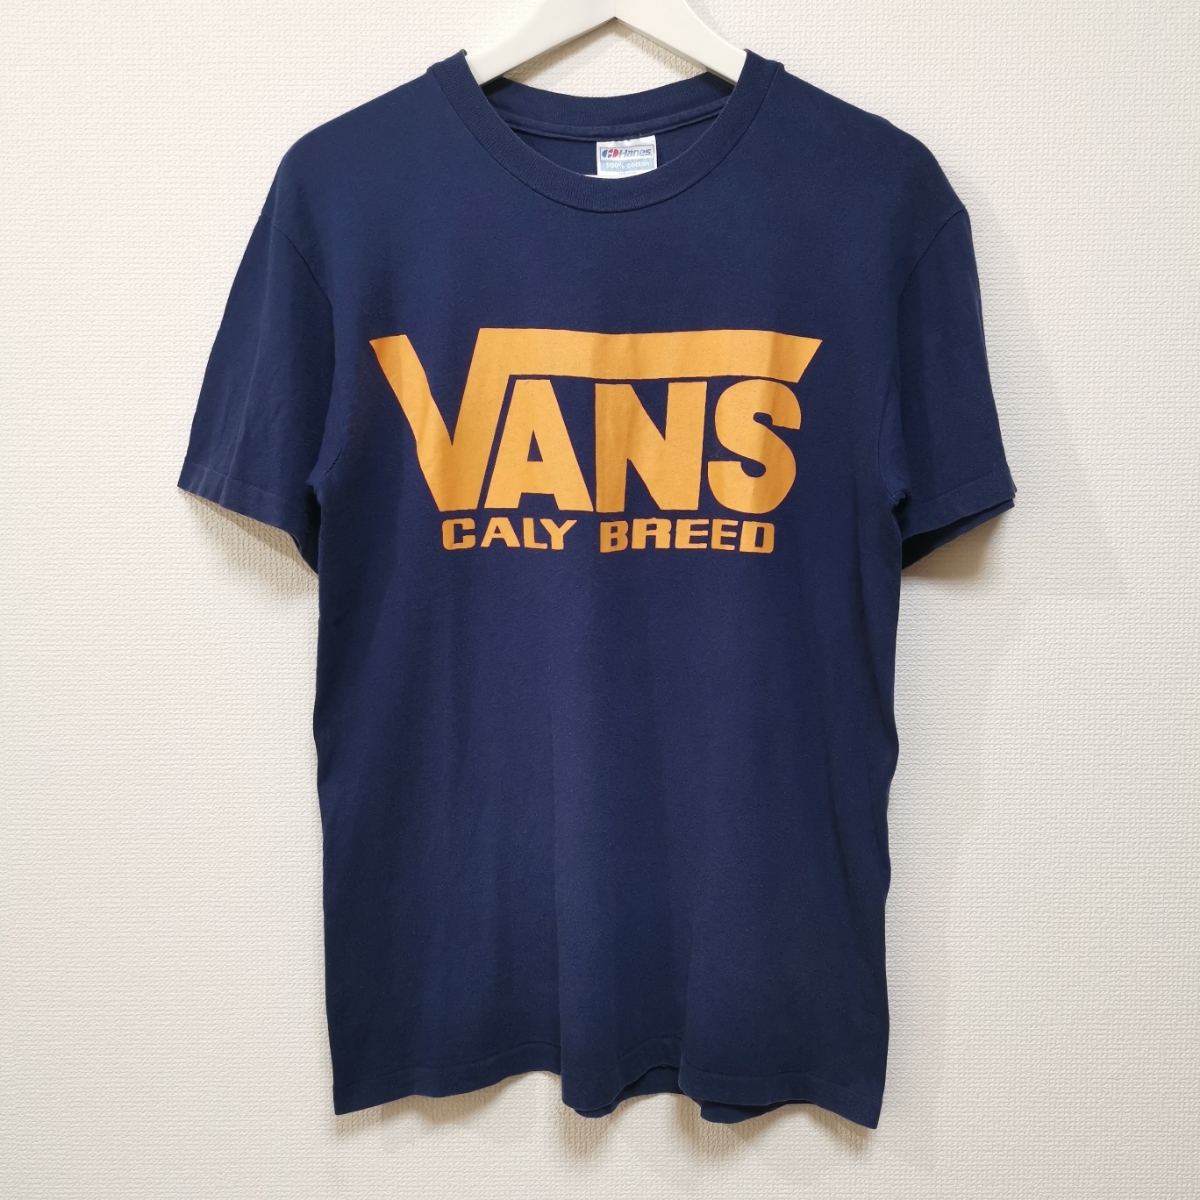 価格は安く BREED CALY VANS 90s M 即決 Tシャツ USA製 VINTAGE HANES